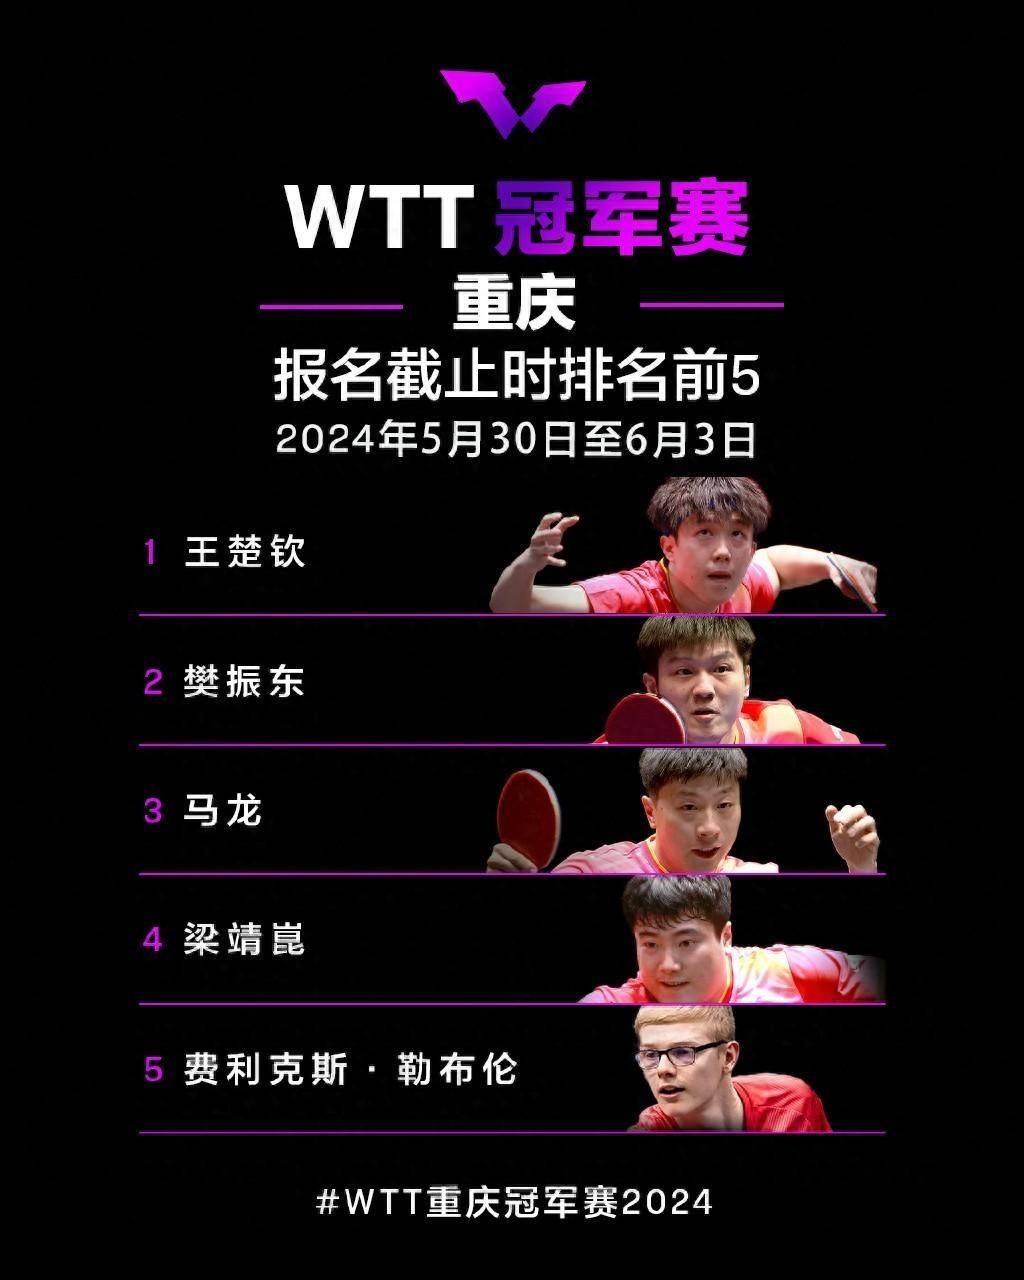 秒没!WTT重庆冠军赛开启售票,半决赛决赛等门票已售罄,官方:齐聚山城,见证巅峰对决